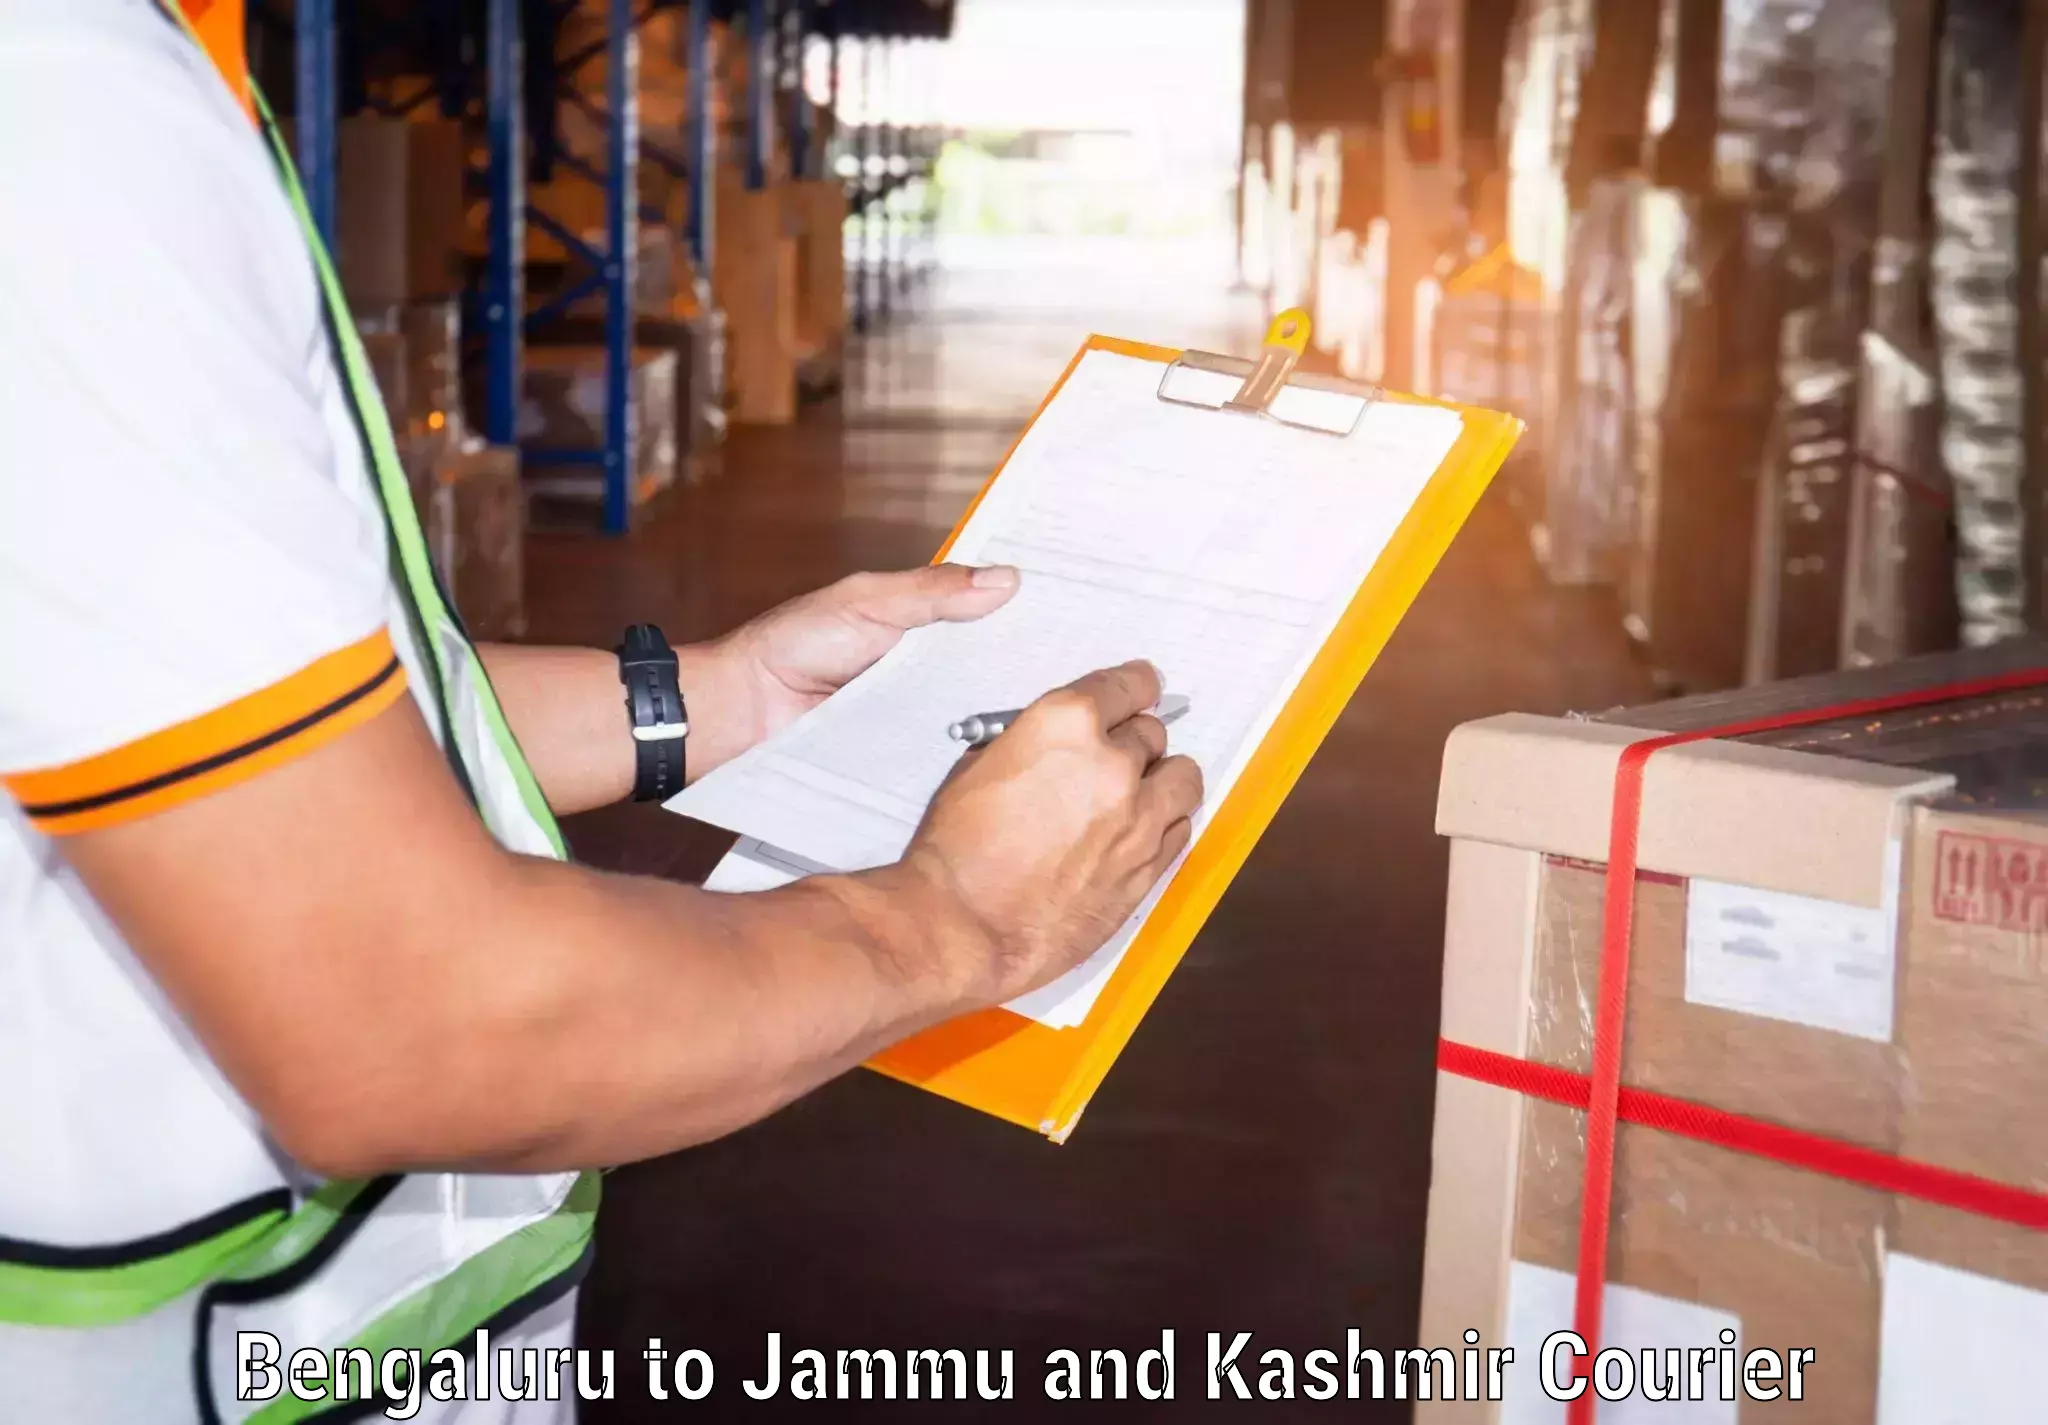 Customer-centric shipping Bengaluru to IIT Jammu